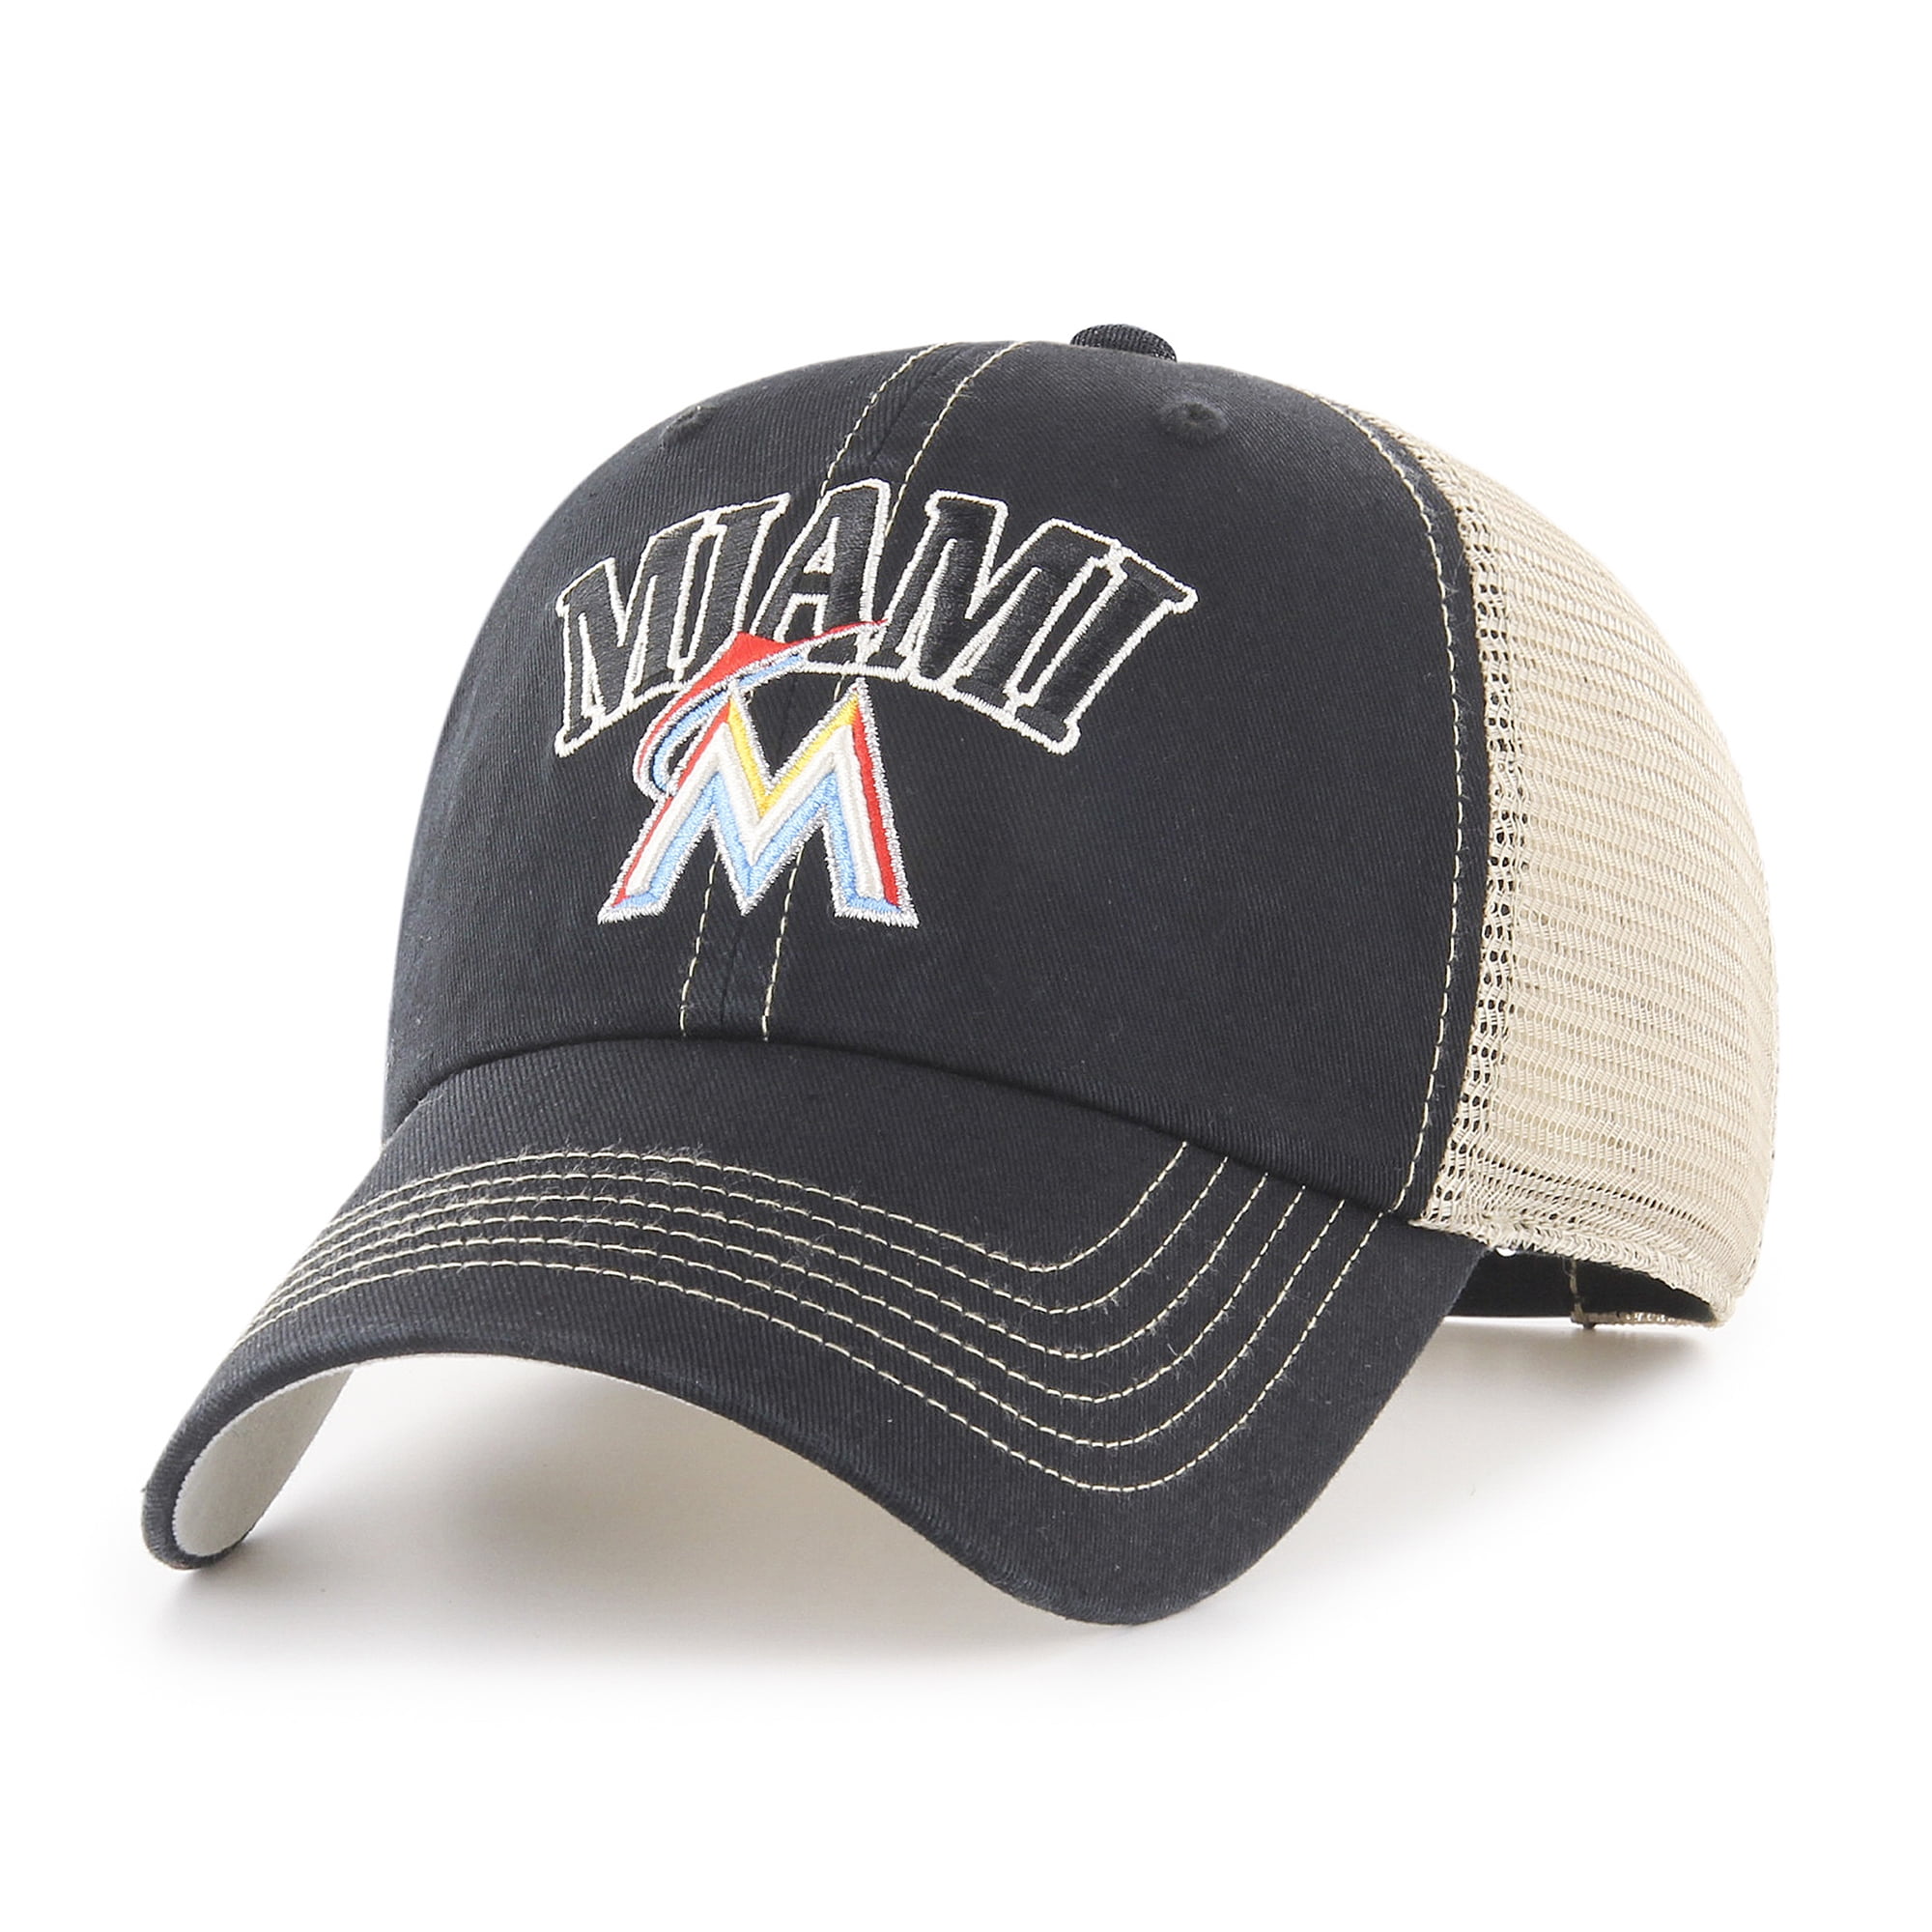 MLB Miami Marlins Aliquippa Adjustable Cap/Hat by Fan Favorite 